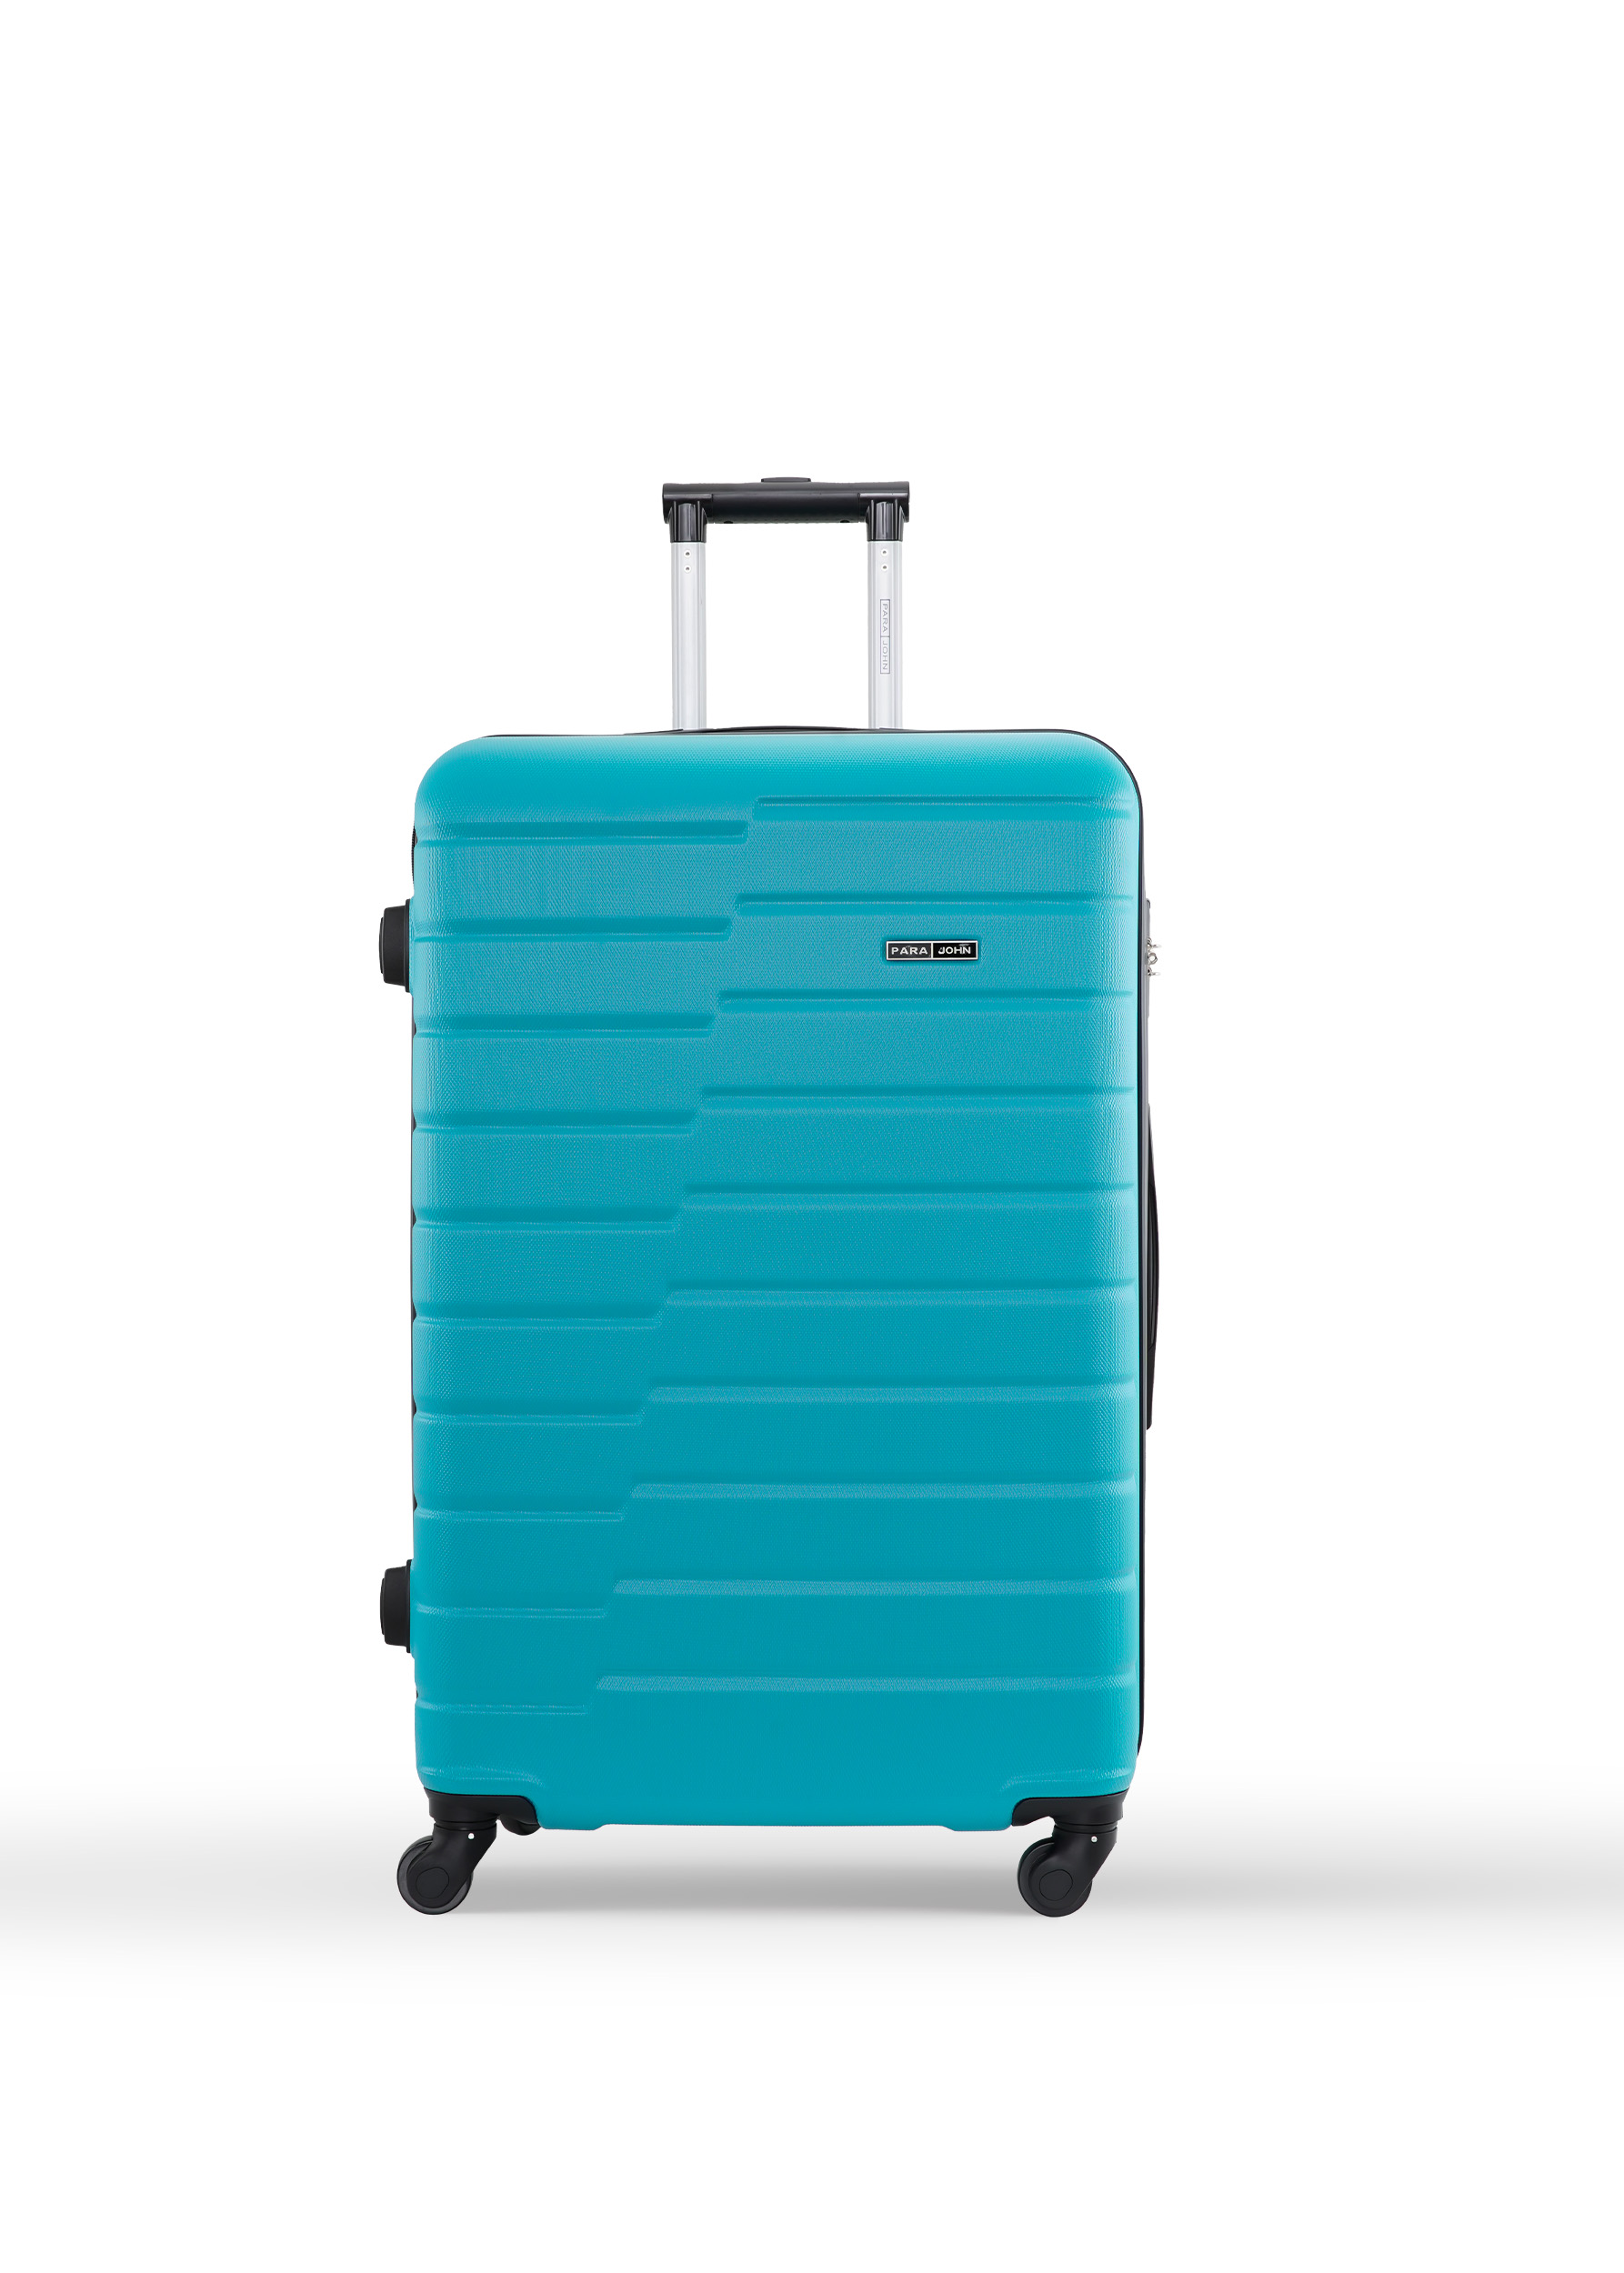 PARA JOHN 4 Pcs Travel Luggage Suitcase Trolley Set - Trolley Bag